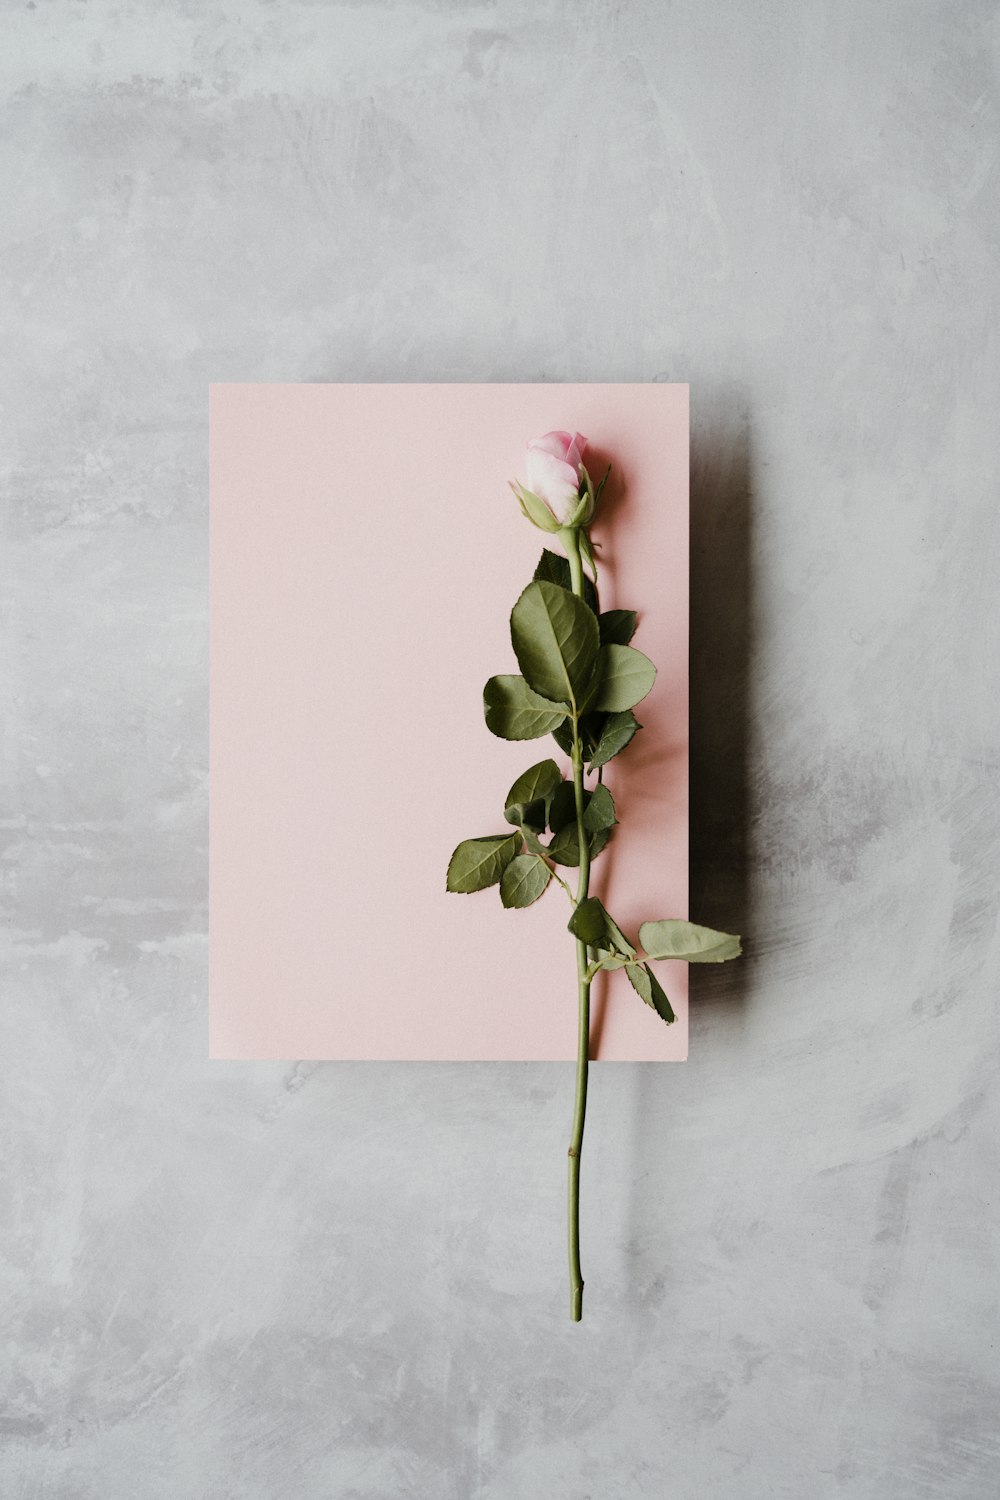 白いプリンター用紙にピンクのバラ